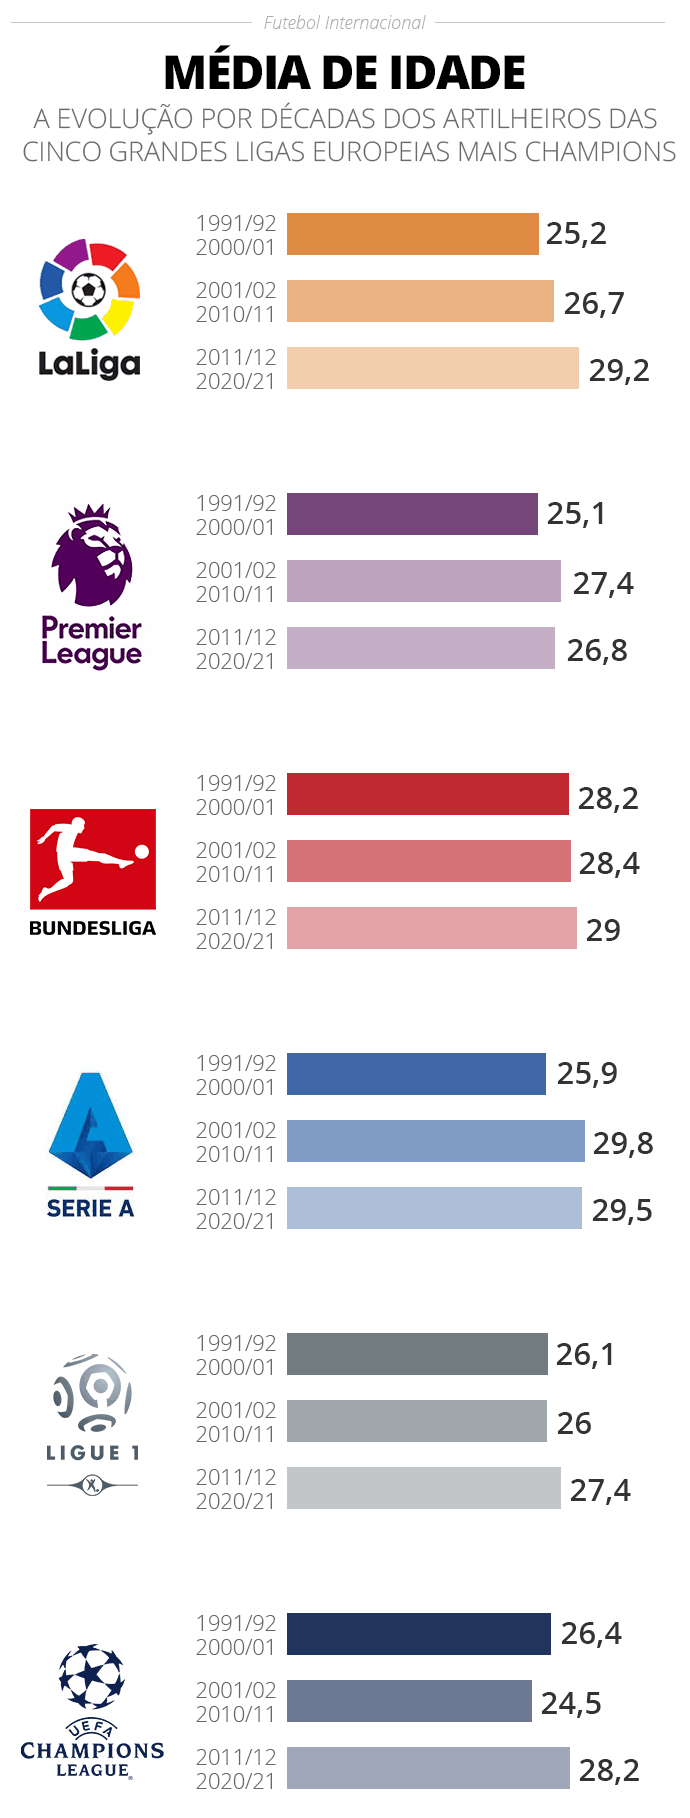 A evolução da média de idade dos artilheiros das grandes ligas da Europa mais Champions - Infografia ge